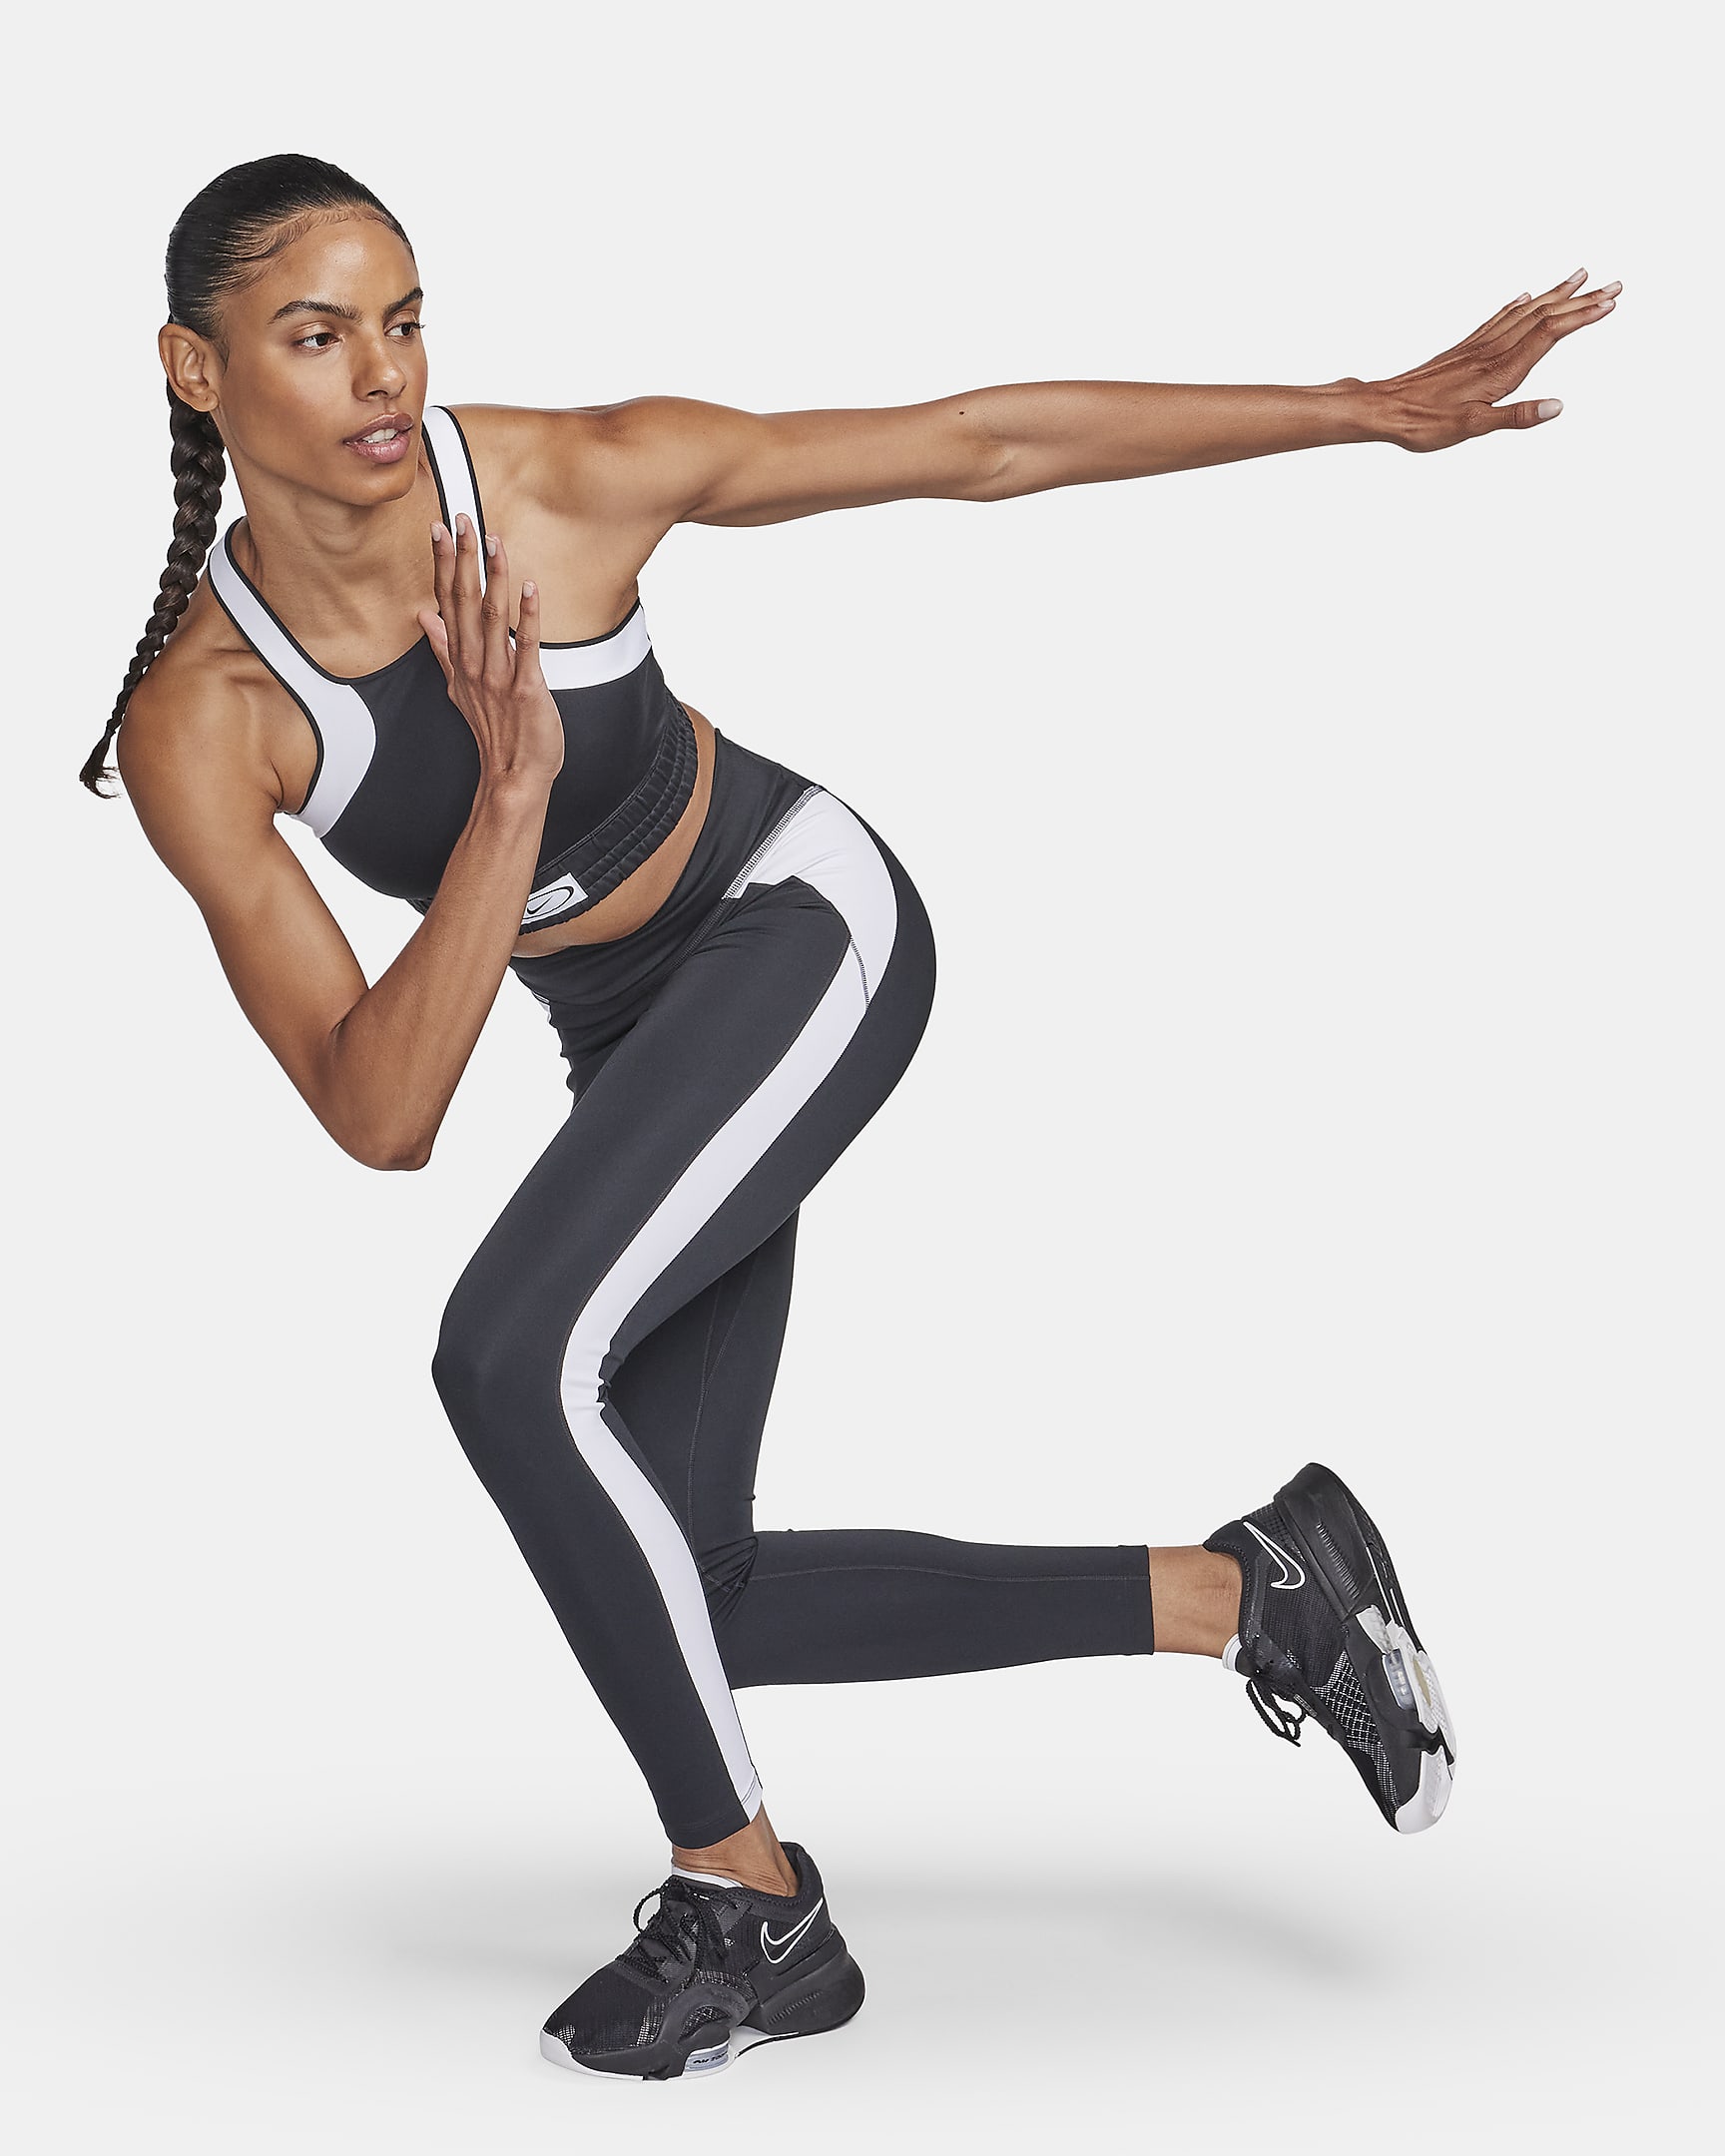 Nike One Women's Mid-Rise Full-Length Leggings. Nike.com